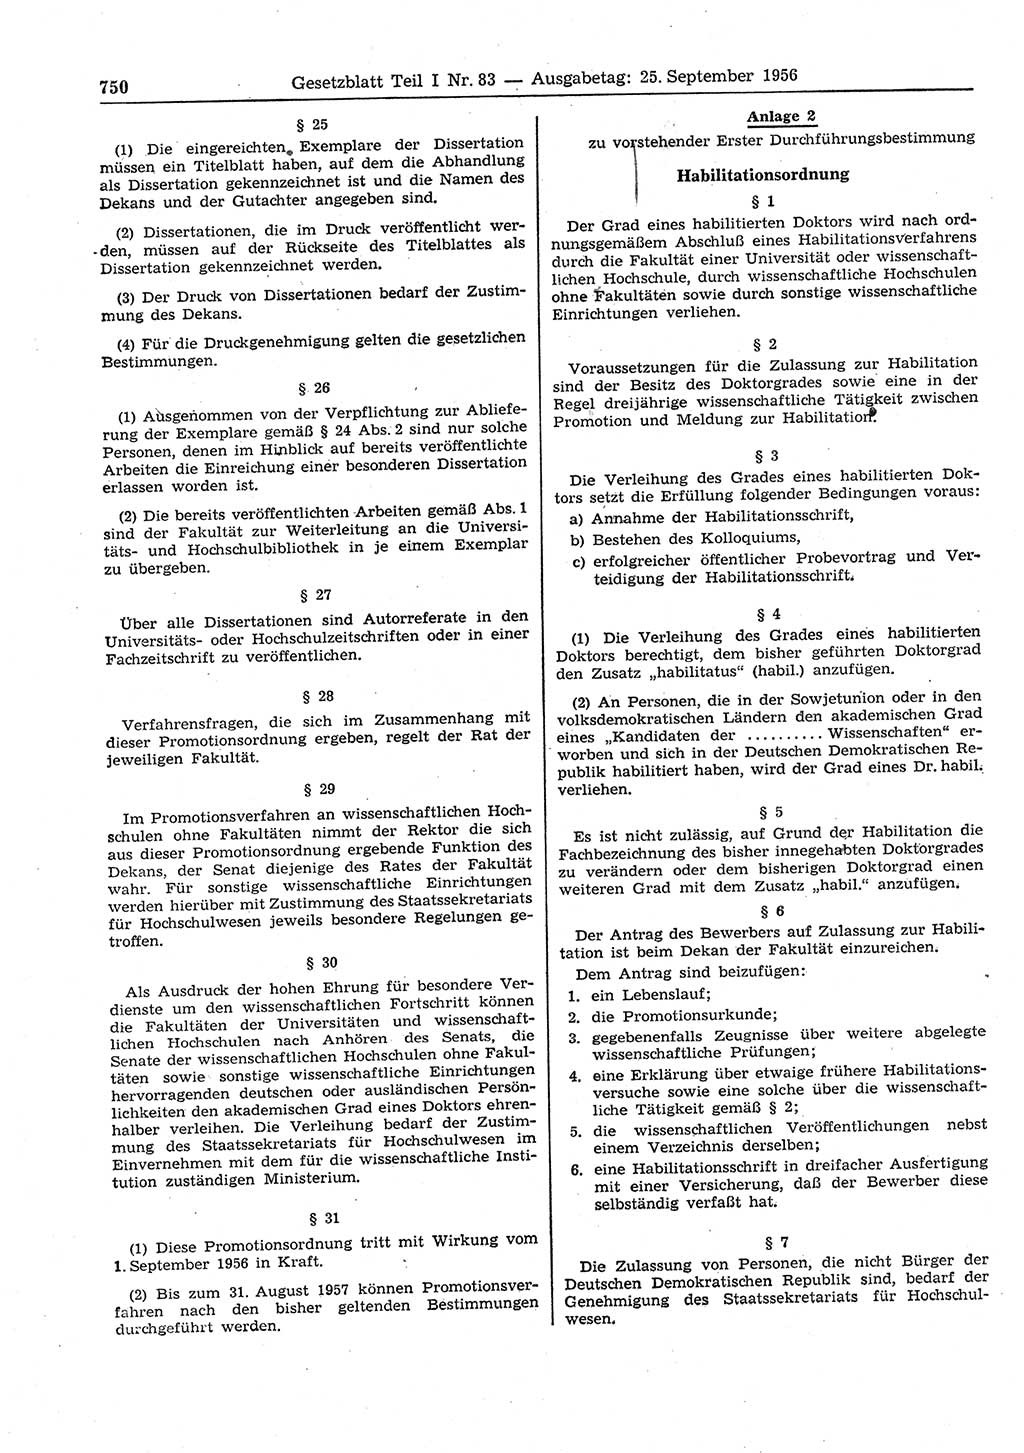 Gesetzblatt (GBl.) der Deutschen Demokratischen Republik (DDR) Teil Ⅰ 1956, Seite 750 (GBl. DDR Ⅰ 1956, S. 750)